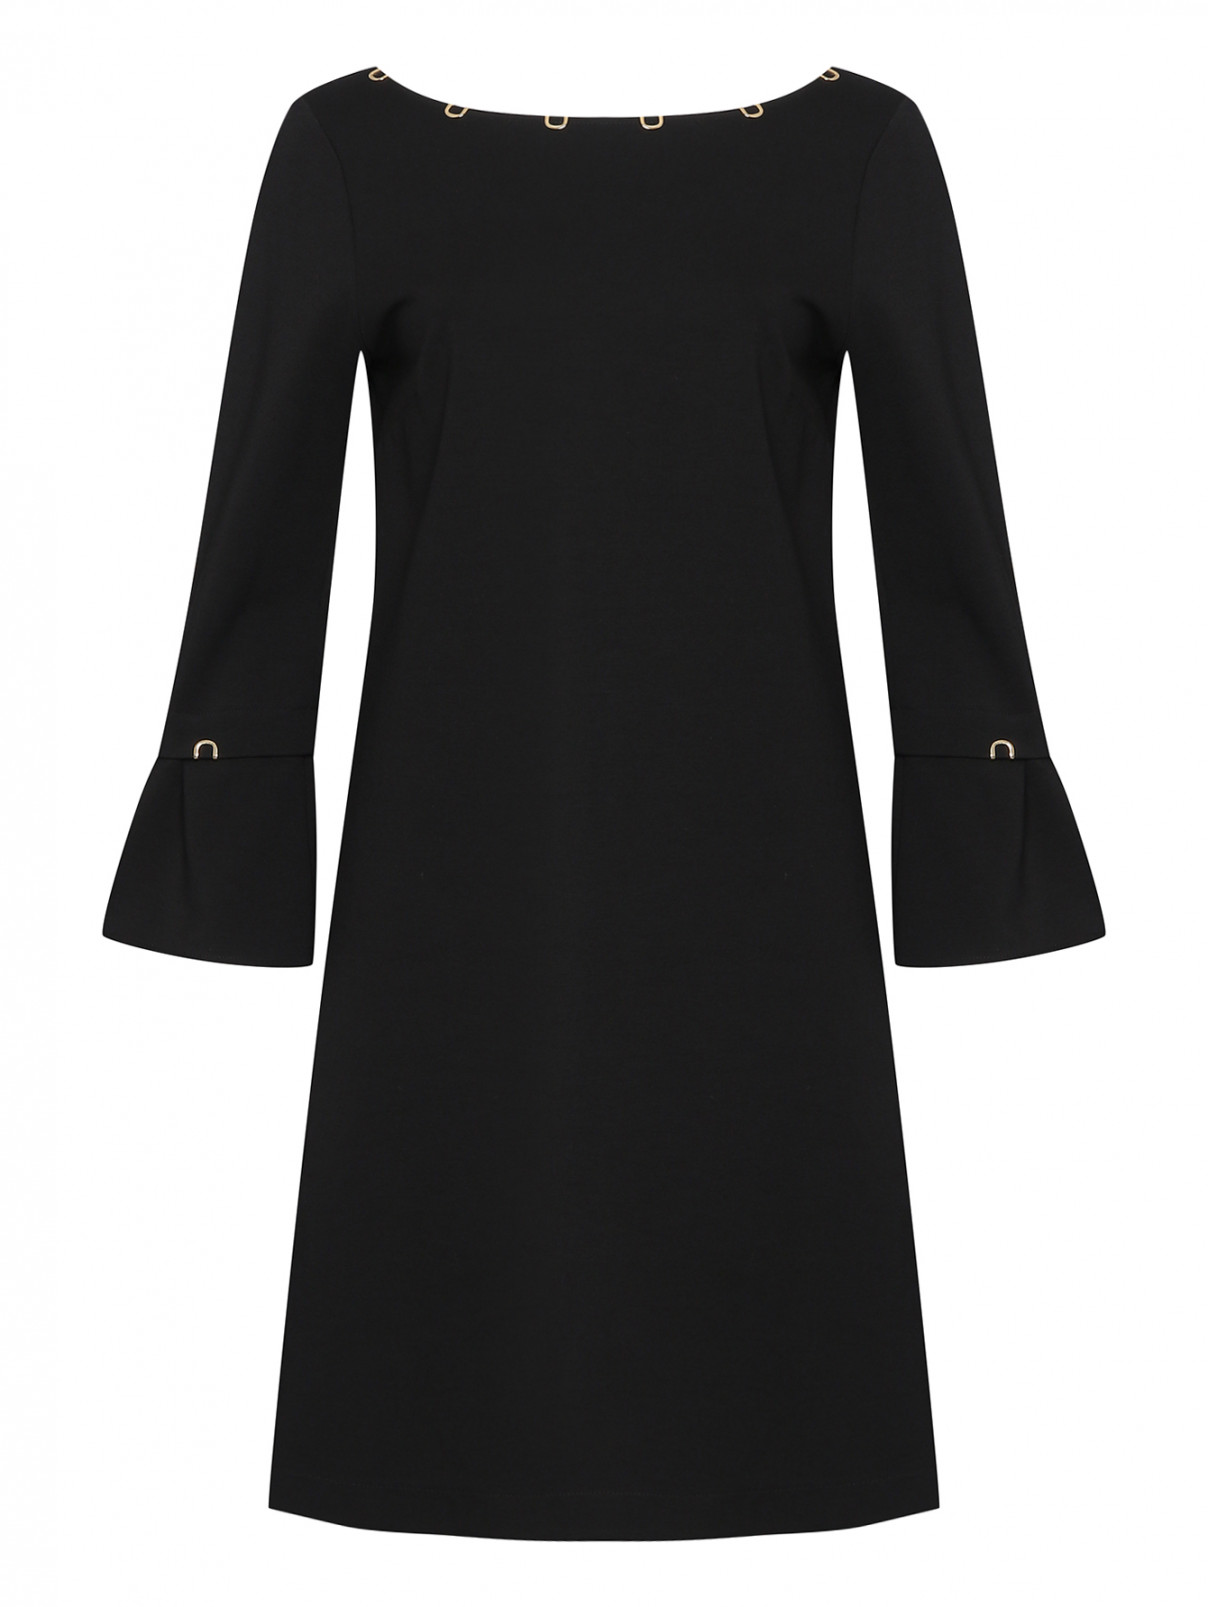 Платье с декоративными элементами Cavalli class  –  Общий вид  – Цвет:  Черный